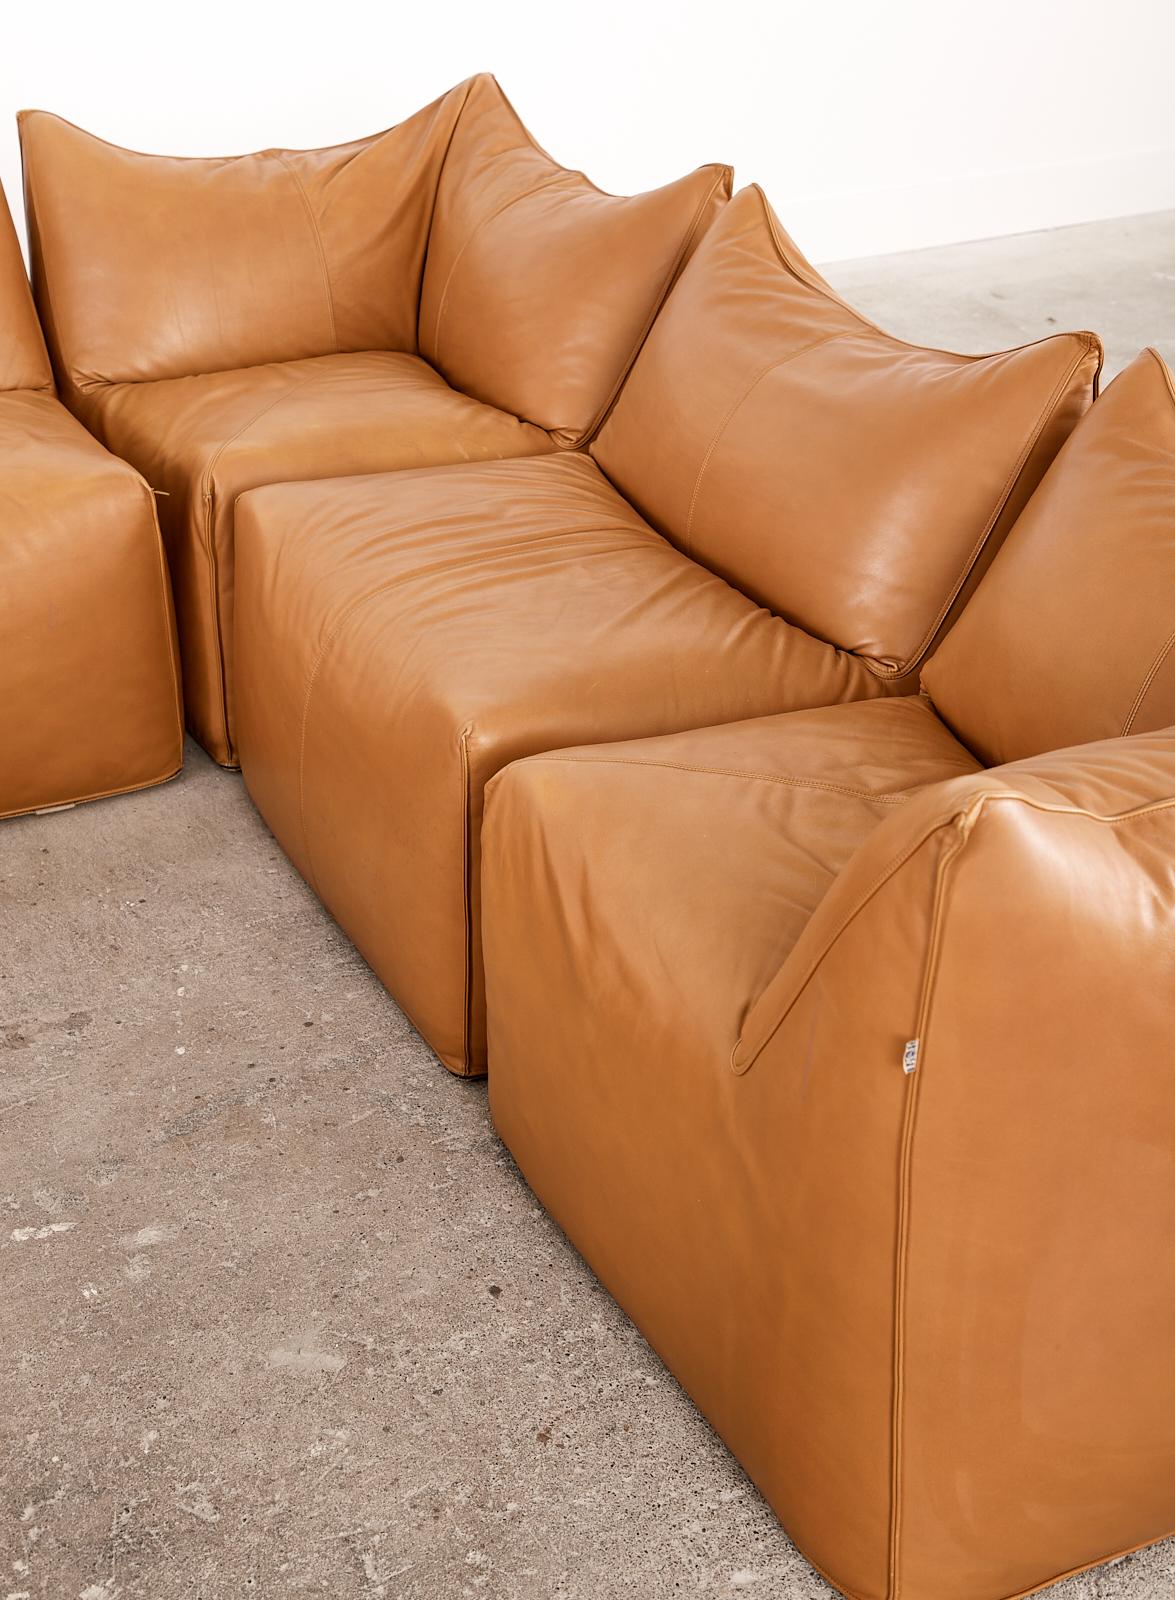 Italian Bambole Leather Sectional Sofa by Mario Bellini for B + B Italia